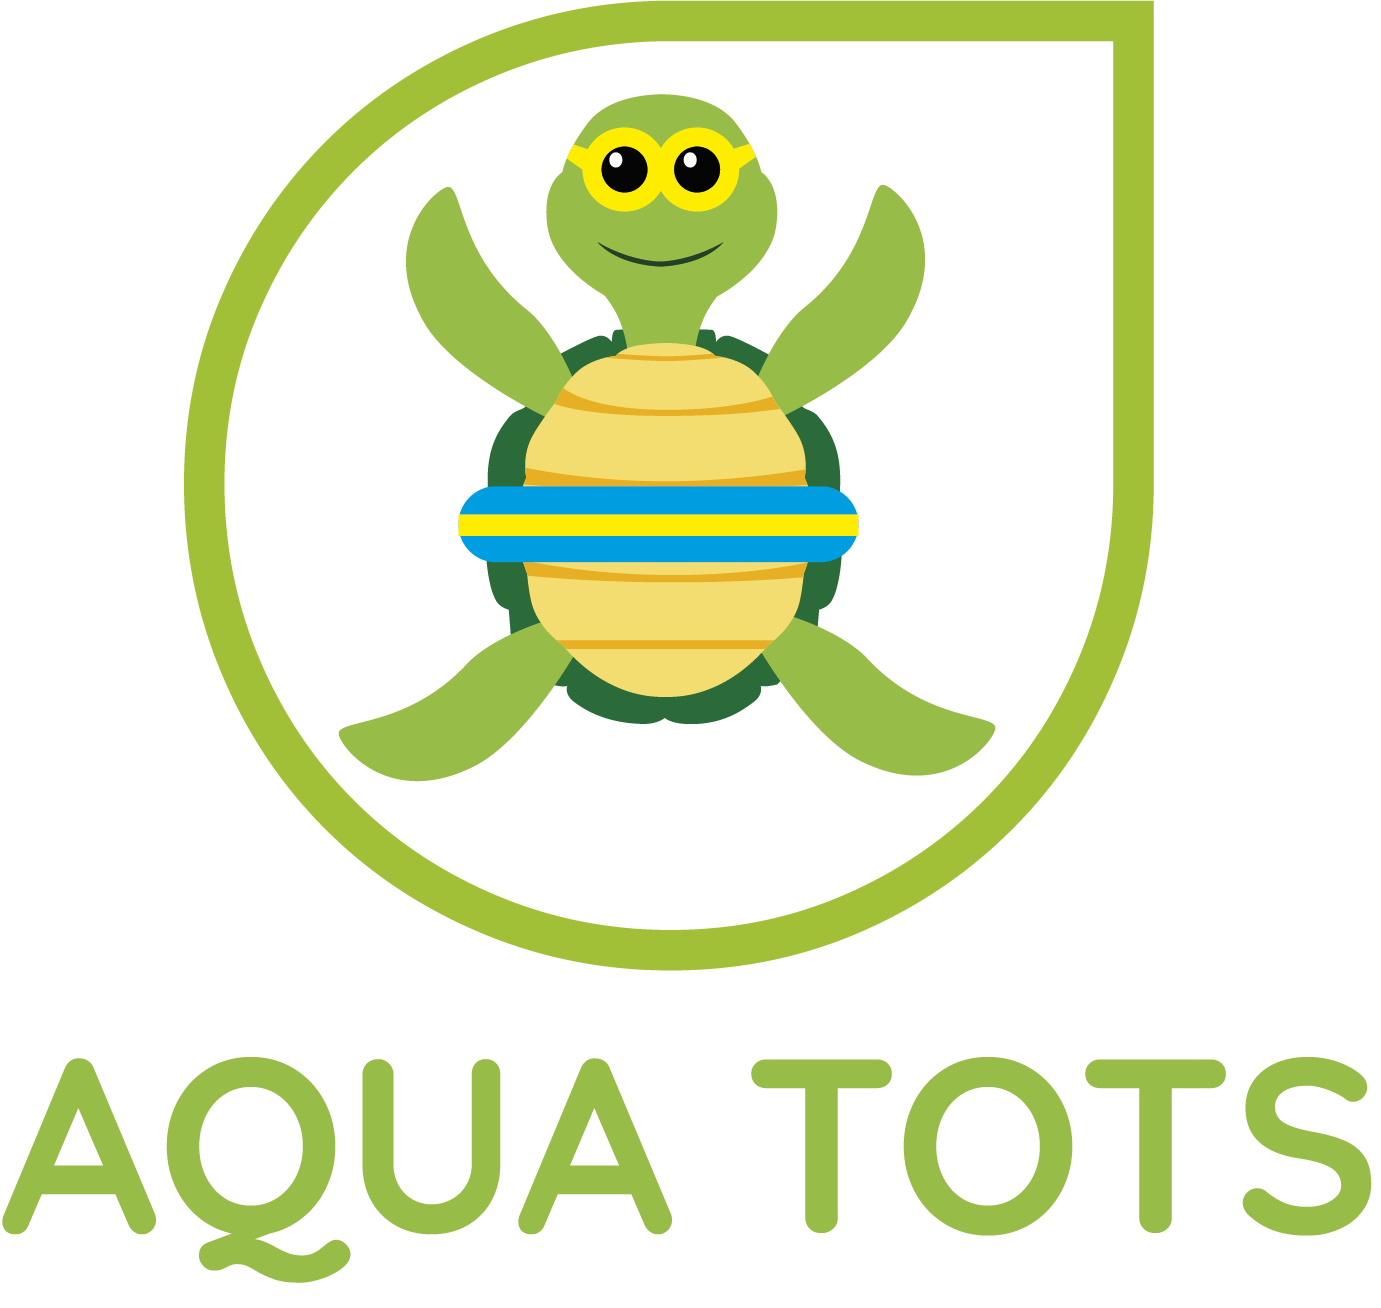 AquaTots logo